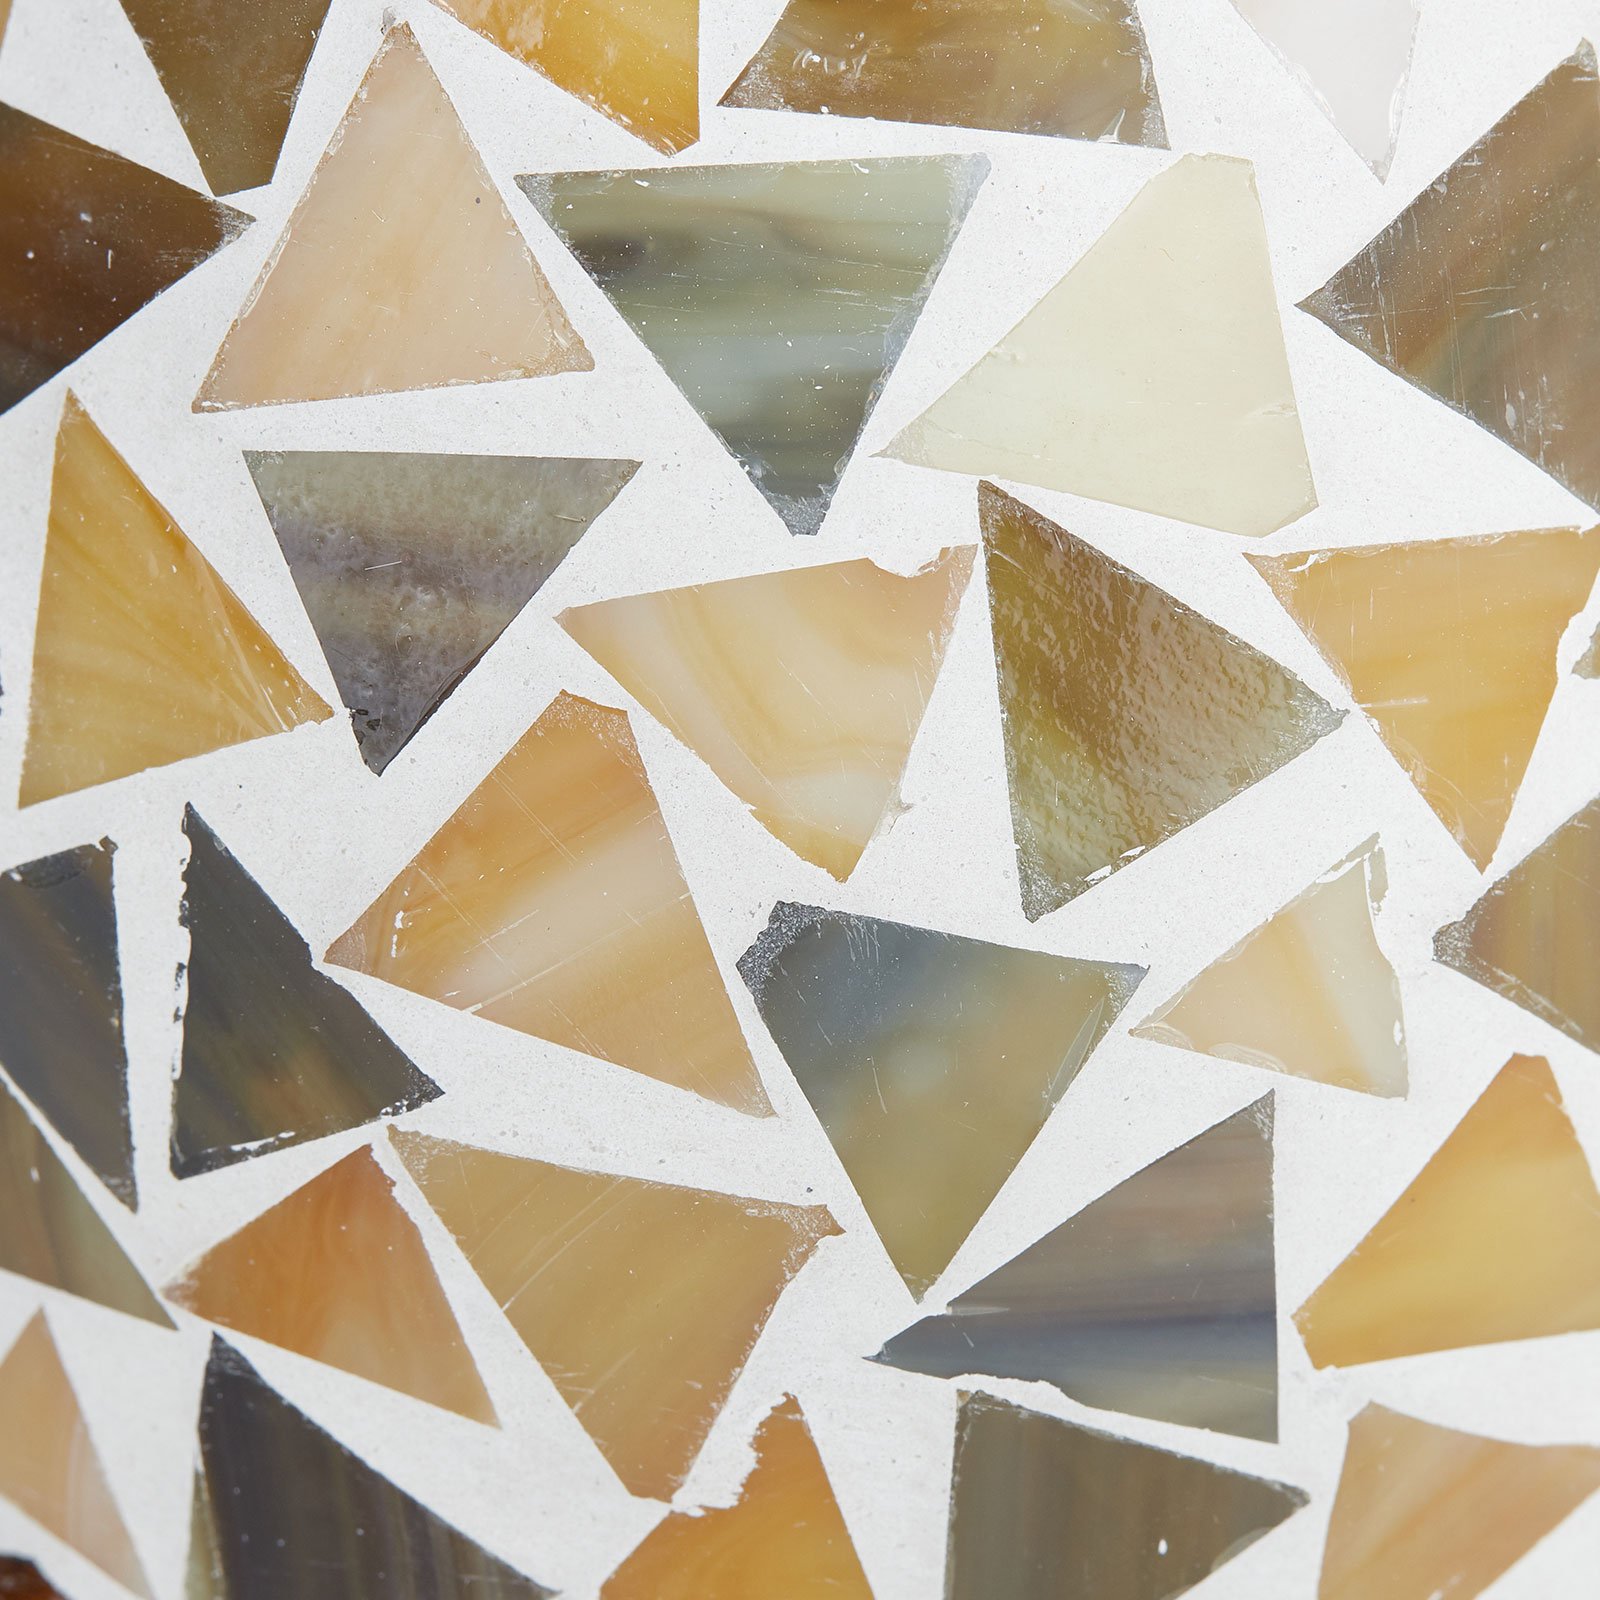 Stolní lampa Enya se skleněnou mozaikou, krémová